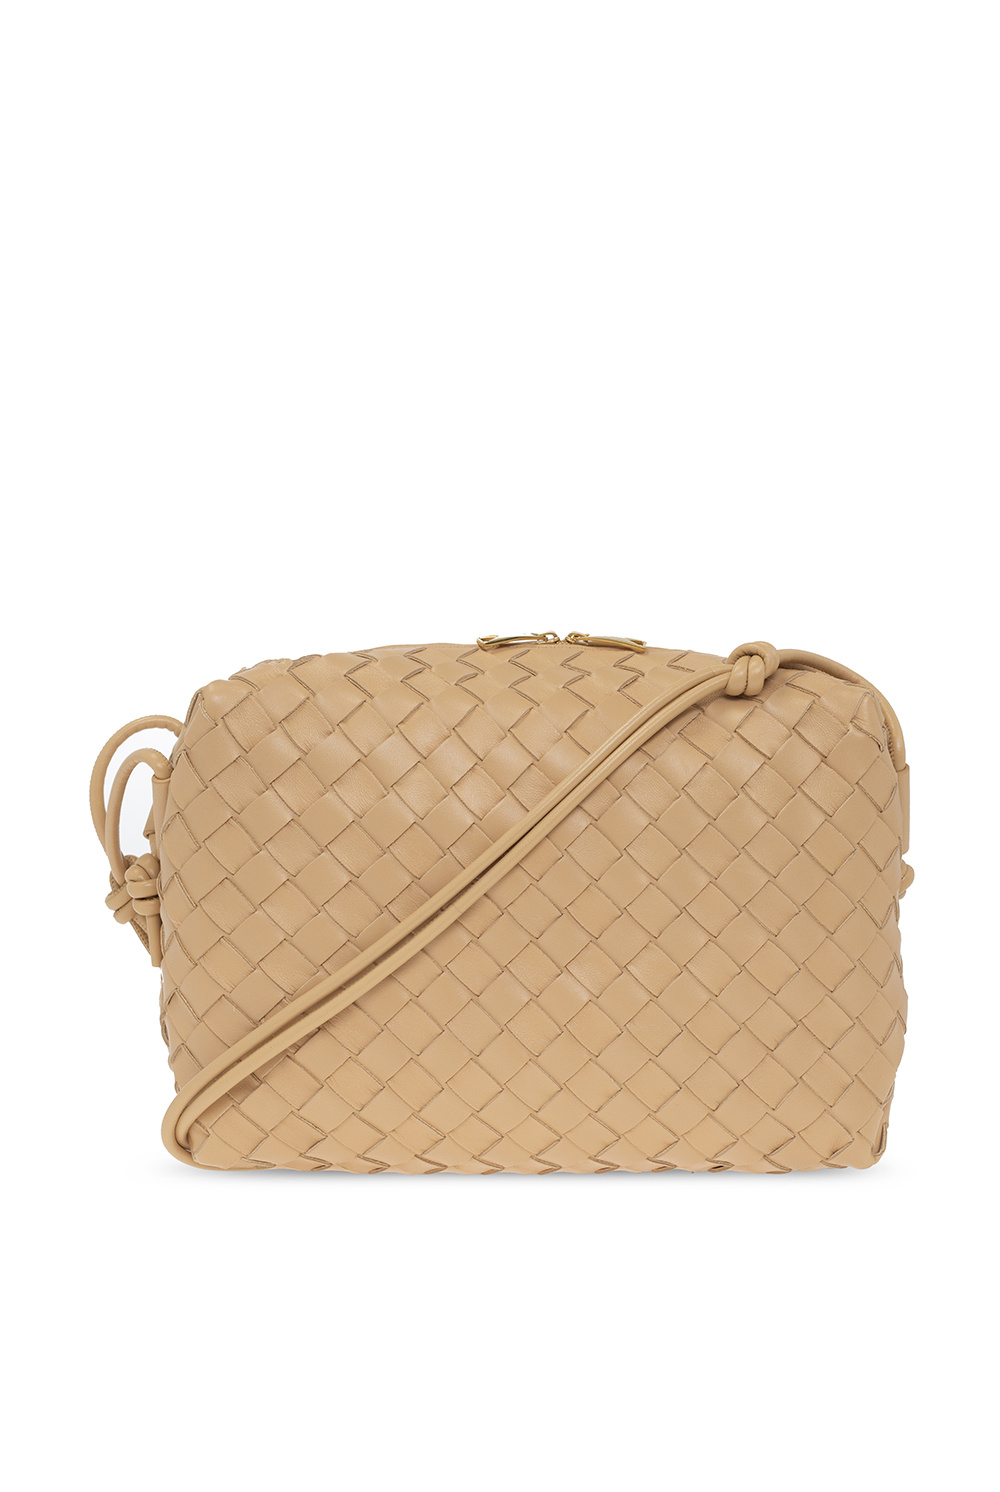 Bottega Veneta 'Loop Medium' shoulder bag, Women's Bags